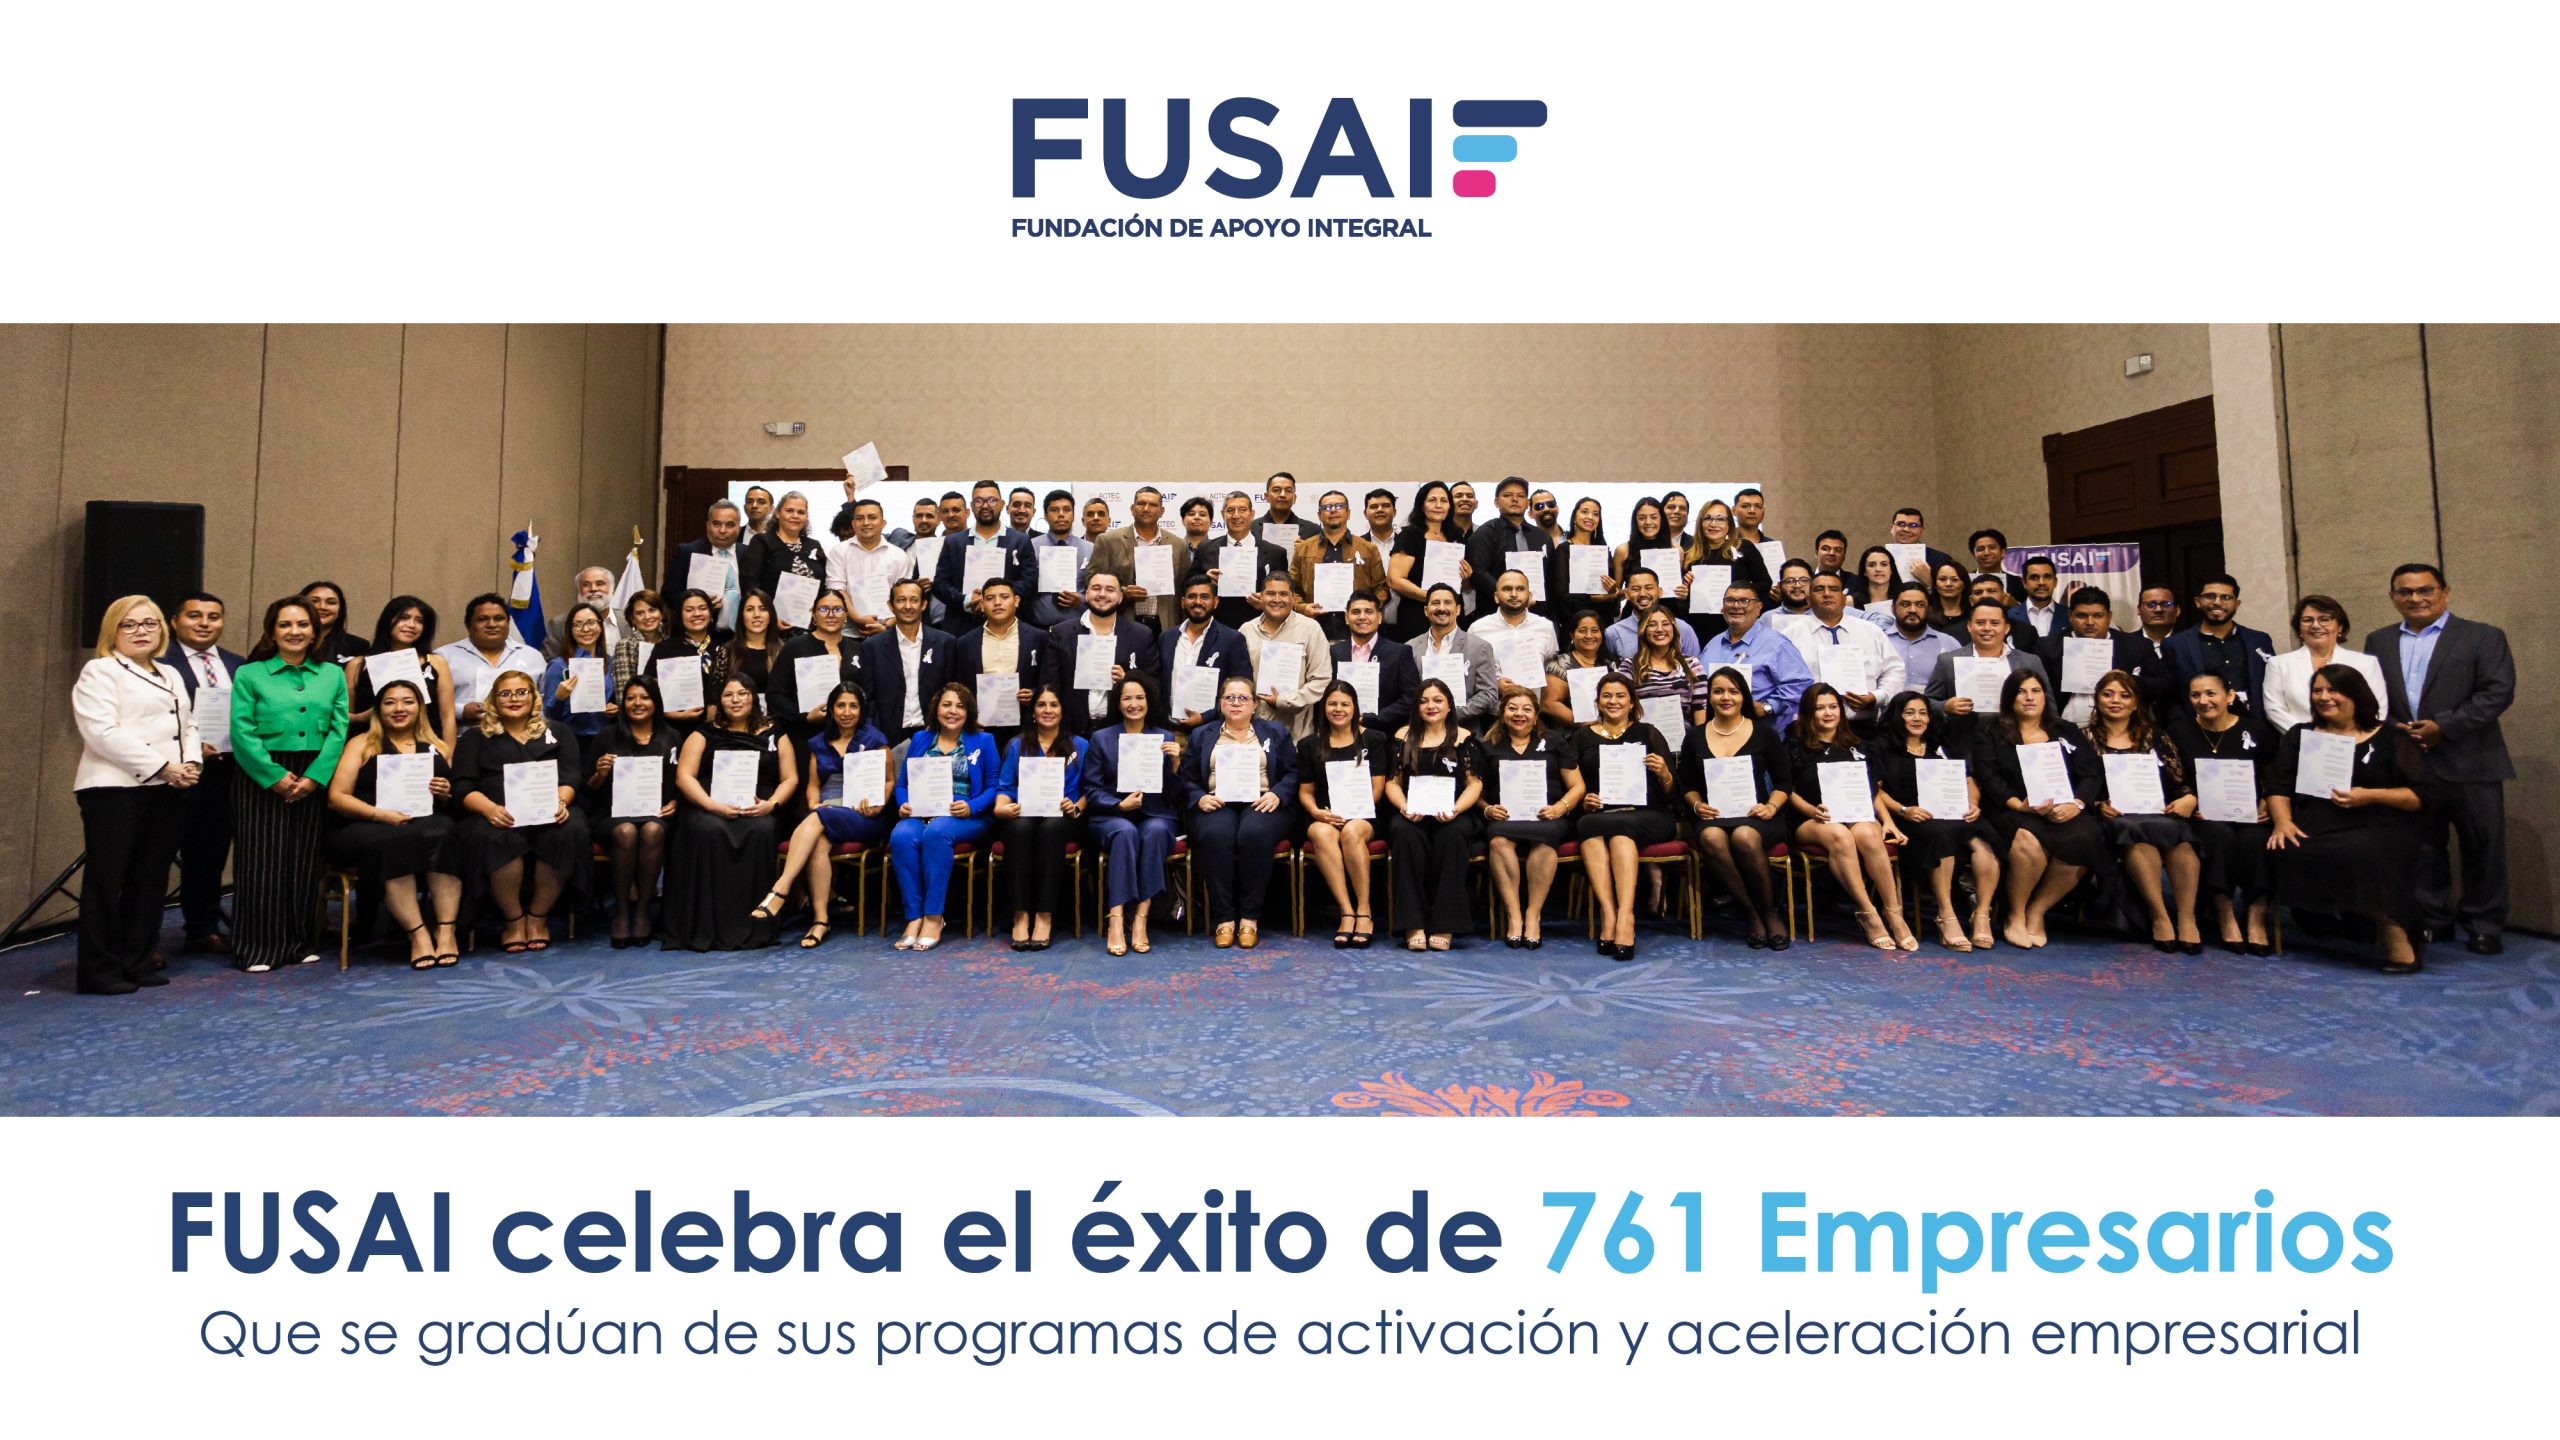 FUSAI celebra el exito de 761 Empresarios que se graduan de su programa de activacion y aceleramiento empresarial